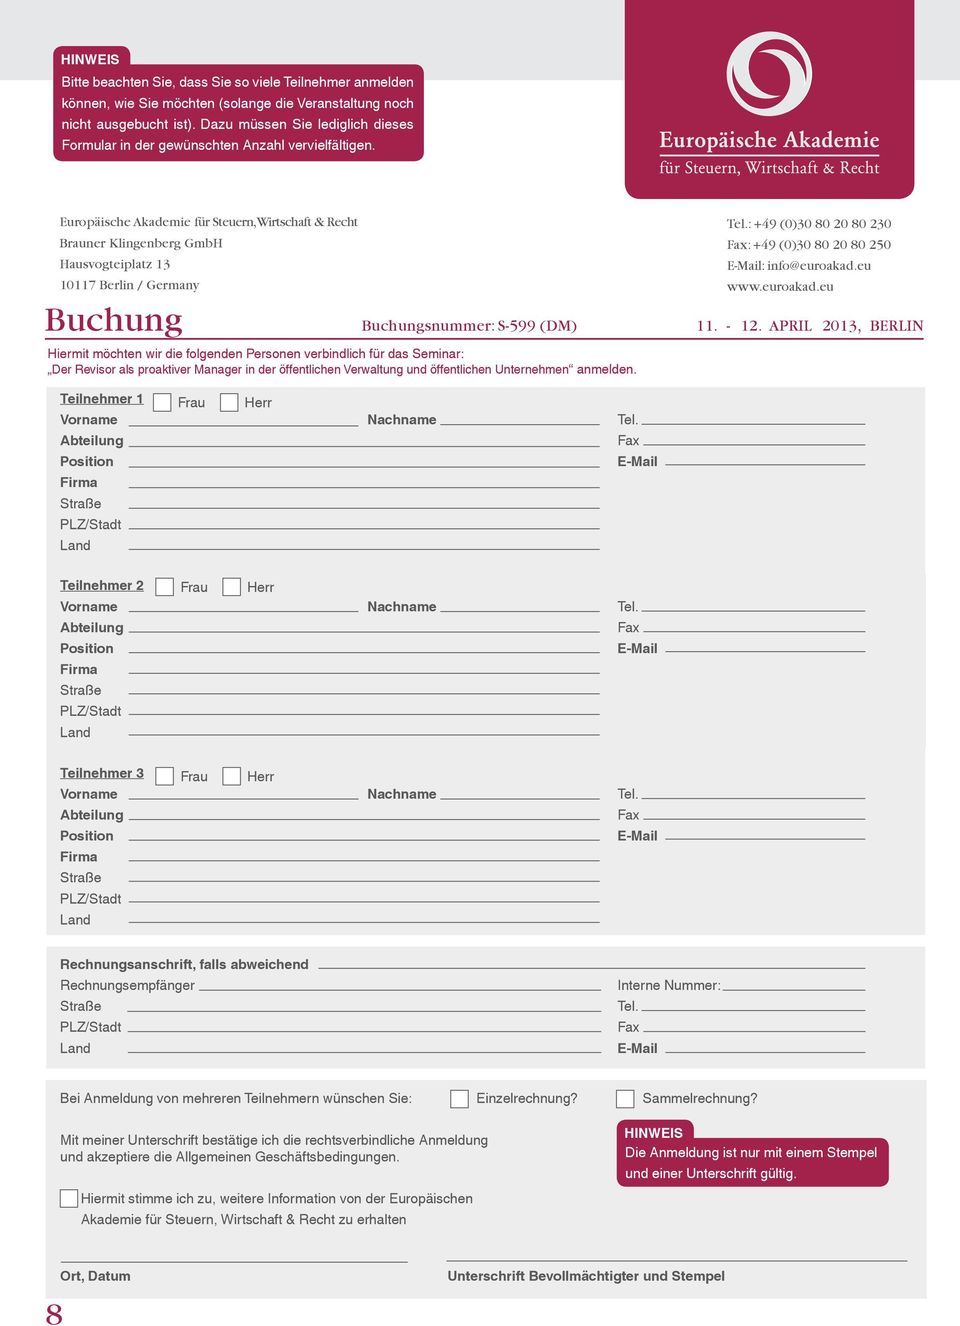 Europäische Akademie für Steuern, Wirtschaft & Recht Brauner Klingenberg GmbH Hausvogteiplatz 13 10117 Berlin / Germany Tel.: +49 (0)30 80 20 80 230 Fax: +49 (0)30 80 20 80 250 E-Mail: info@euroakad.